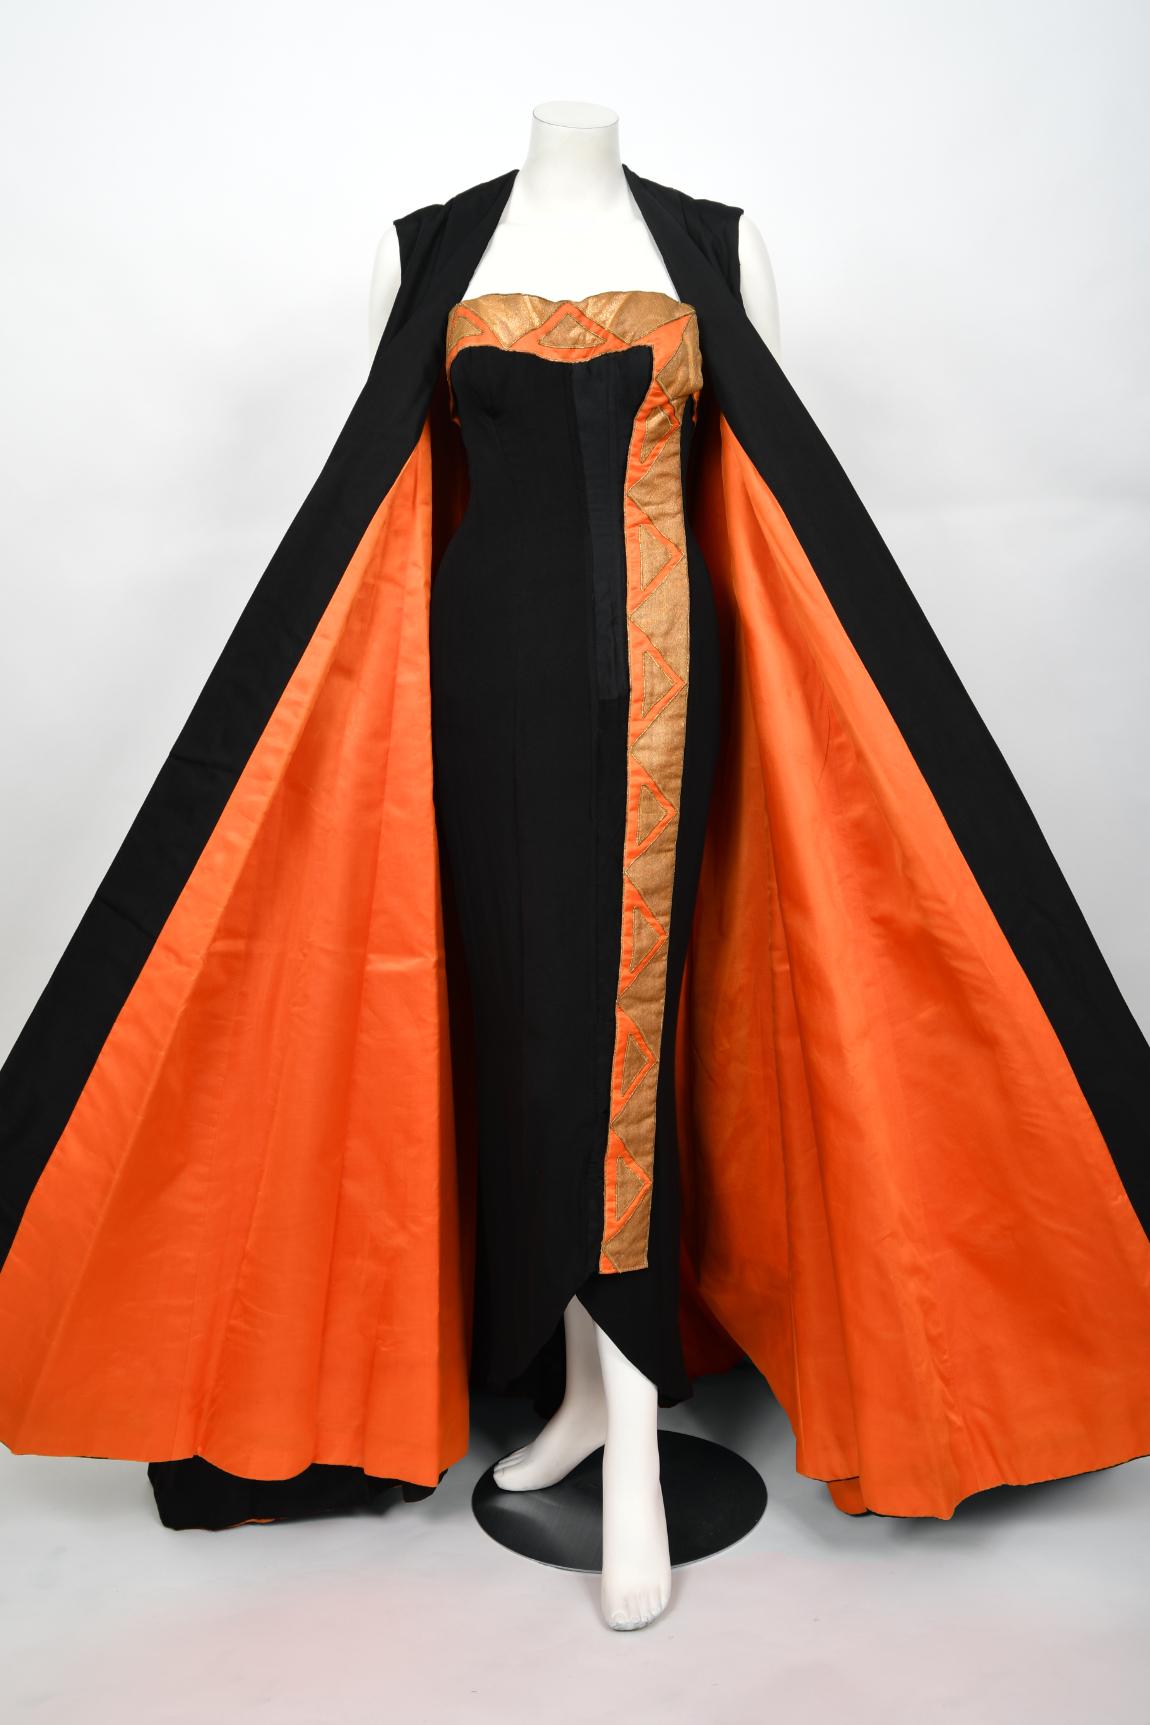 Ein bedeutendes und wahrhaft atemberaubendes, für Yma Sumac maßgeschneidertes Kleidungsensemble aus der Mitte der 1950er Jahre. Yma Sumac (1922-2008) war eine bekannte peruanische Sopranistin und die ursprüngliche Königin der Exotica. Ihr